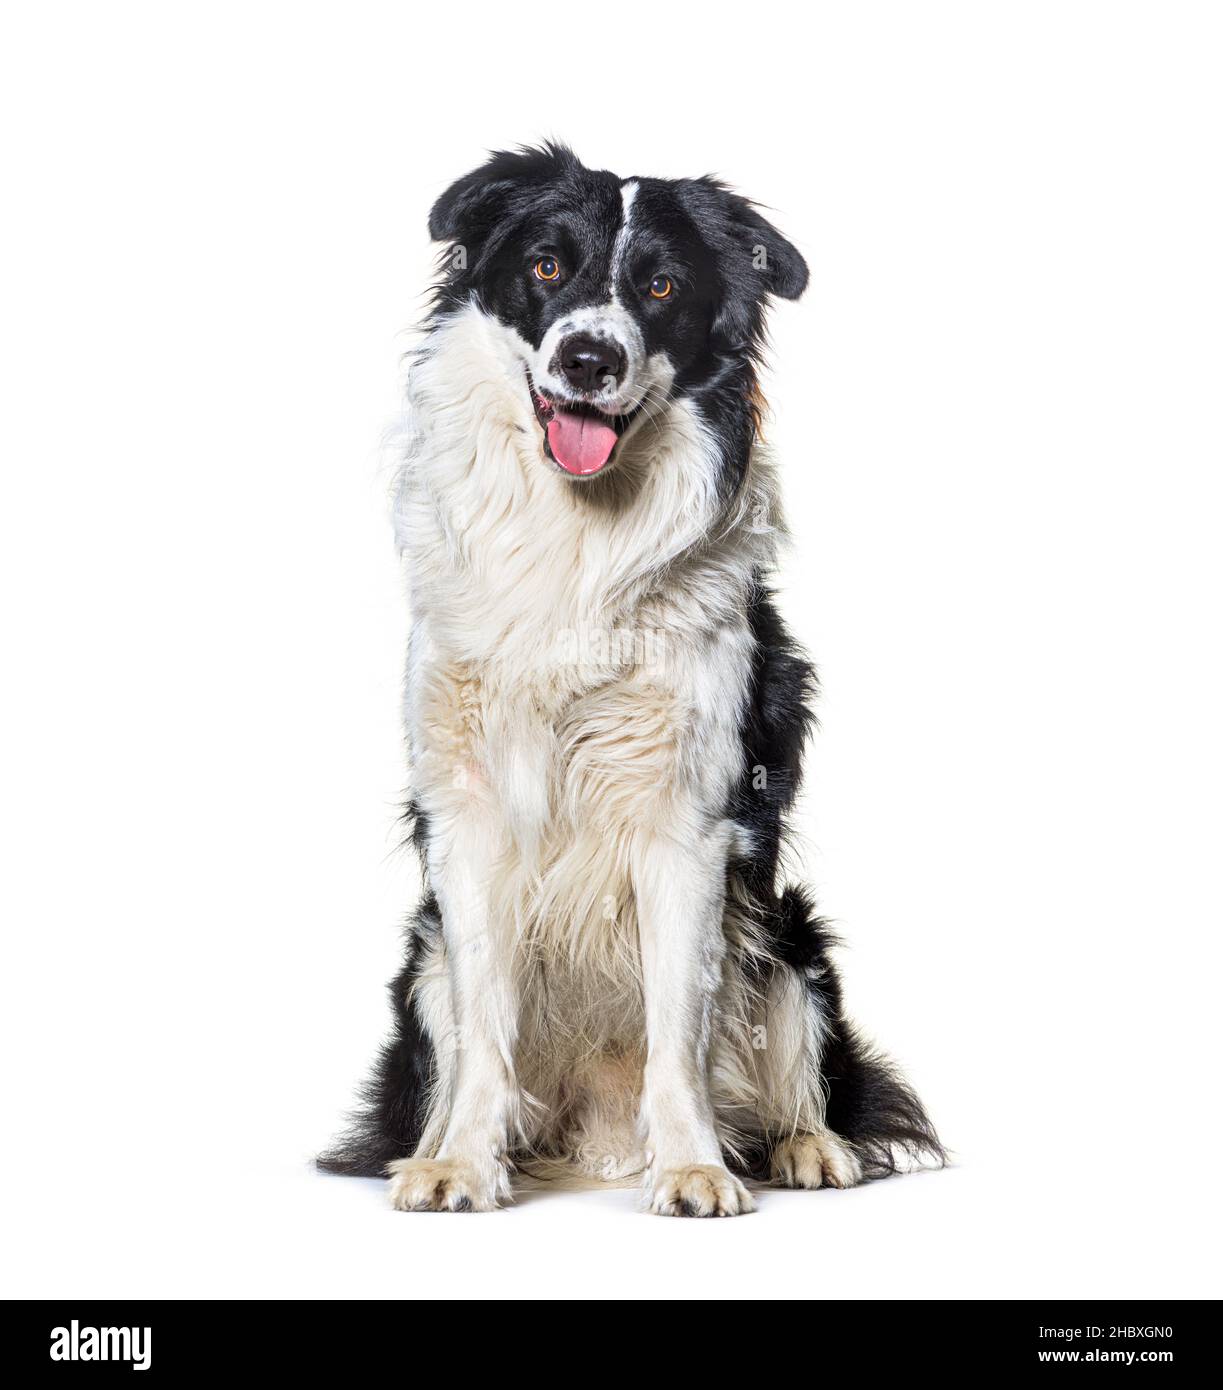 Panting noir et blanc bordure collie portrait de chien posant assis devant, isolé sur blanc Banque D'Images